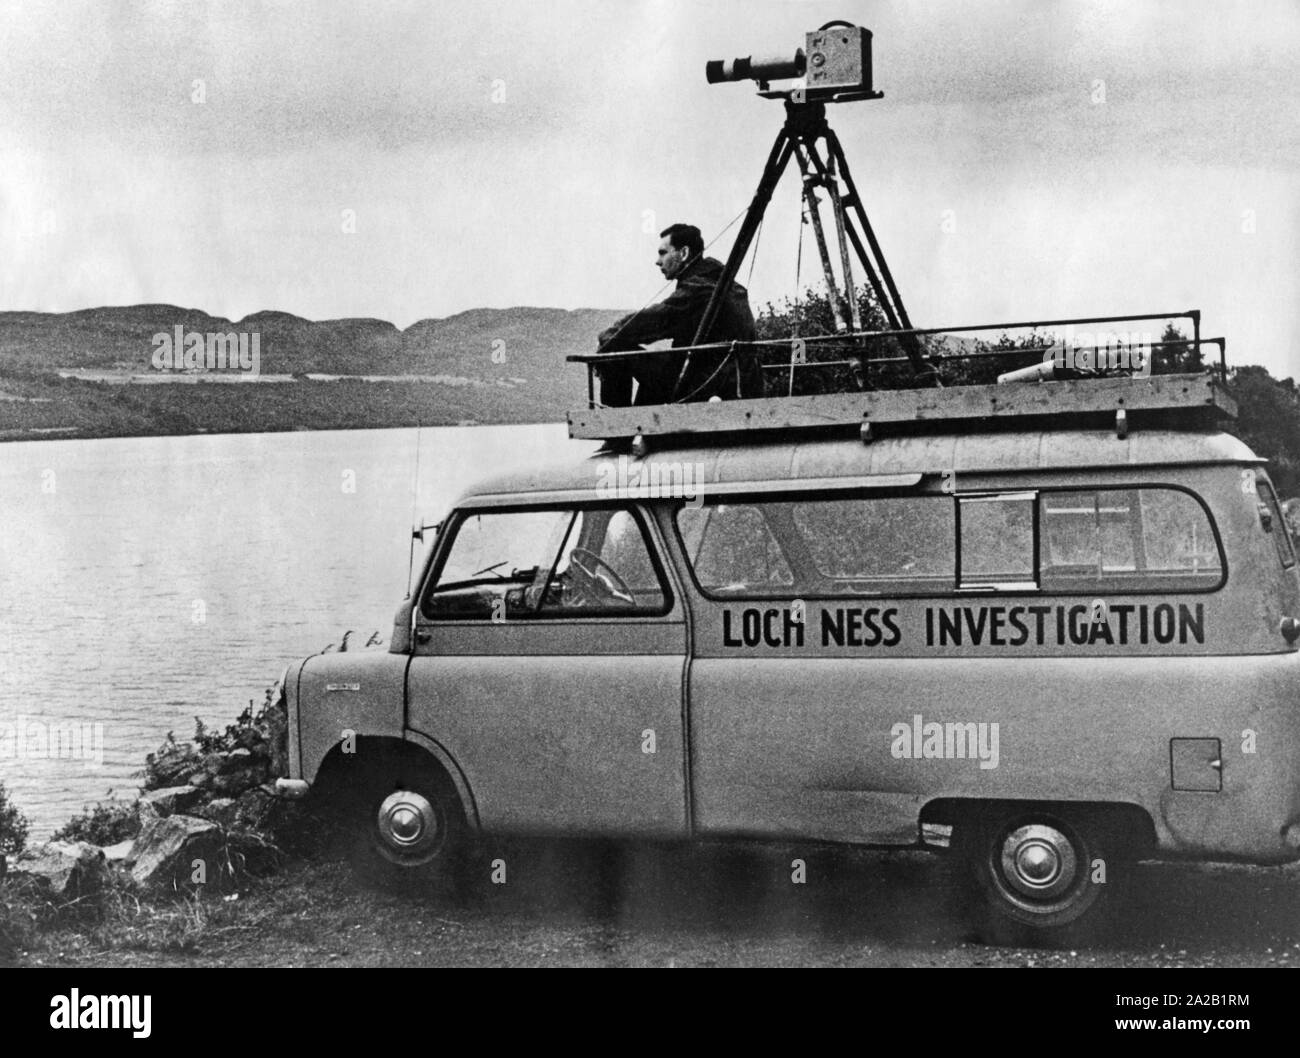 Un homme sur le toit d'un minibus avec un appareil photo attaché à lui, à la recherche au Loch Ness, dans l'espoir de voir le monstre du Loch Ness. Sur la voiture l'inscription : 'Loch Ness' enquête. Copyright : Max Scheler / SZ Photo. Banque D'Images